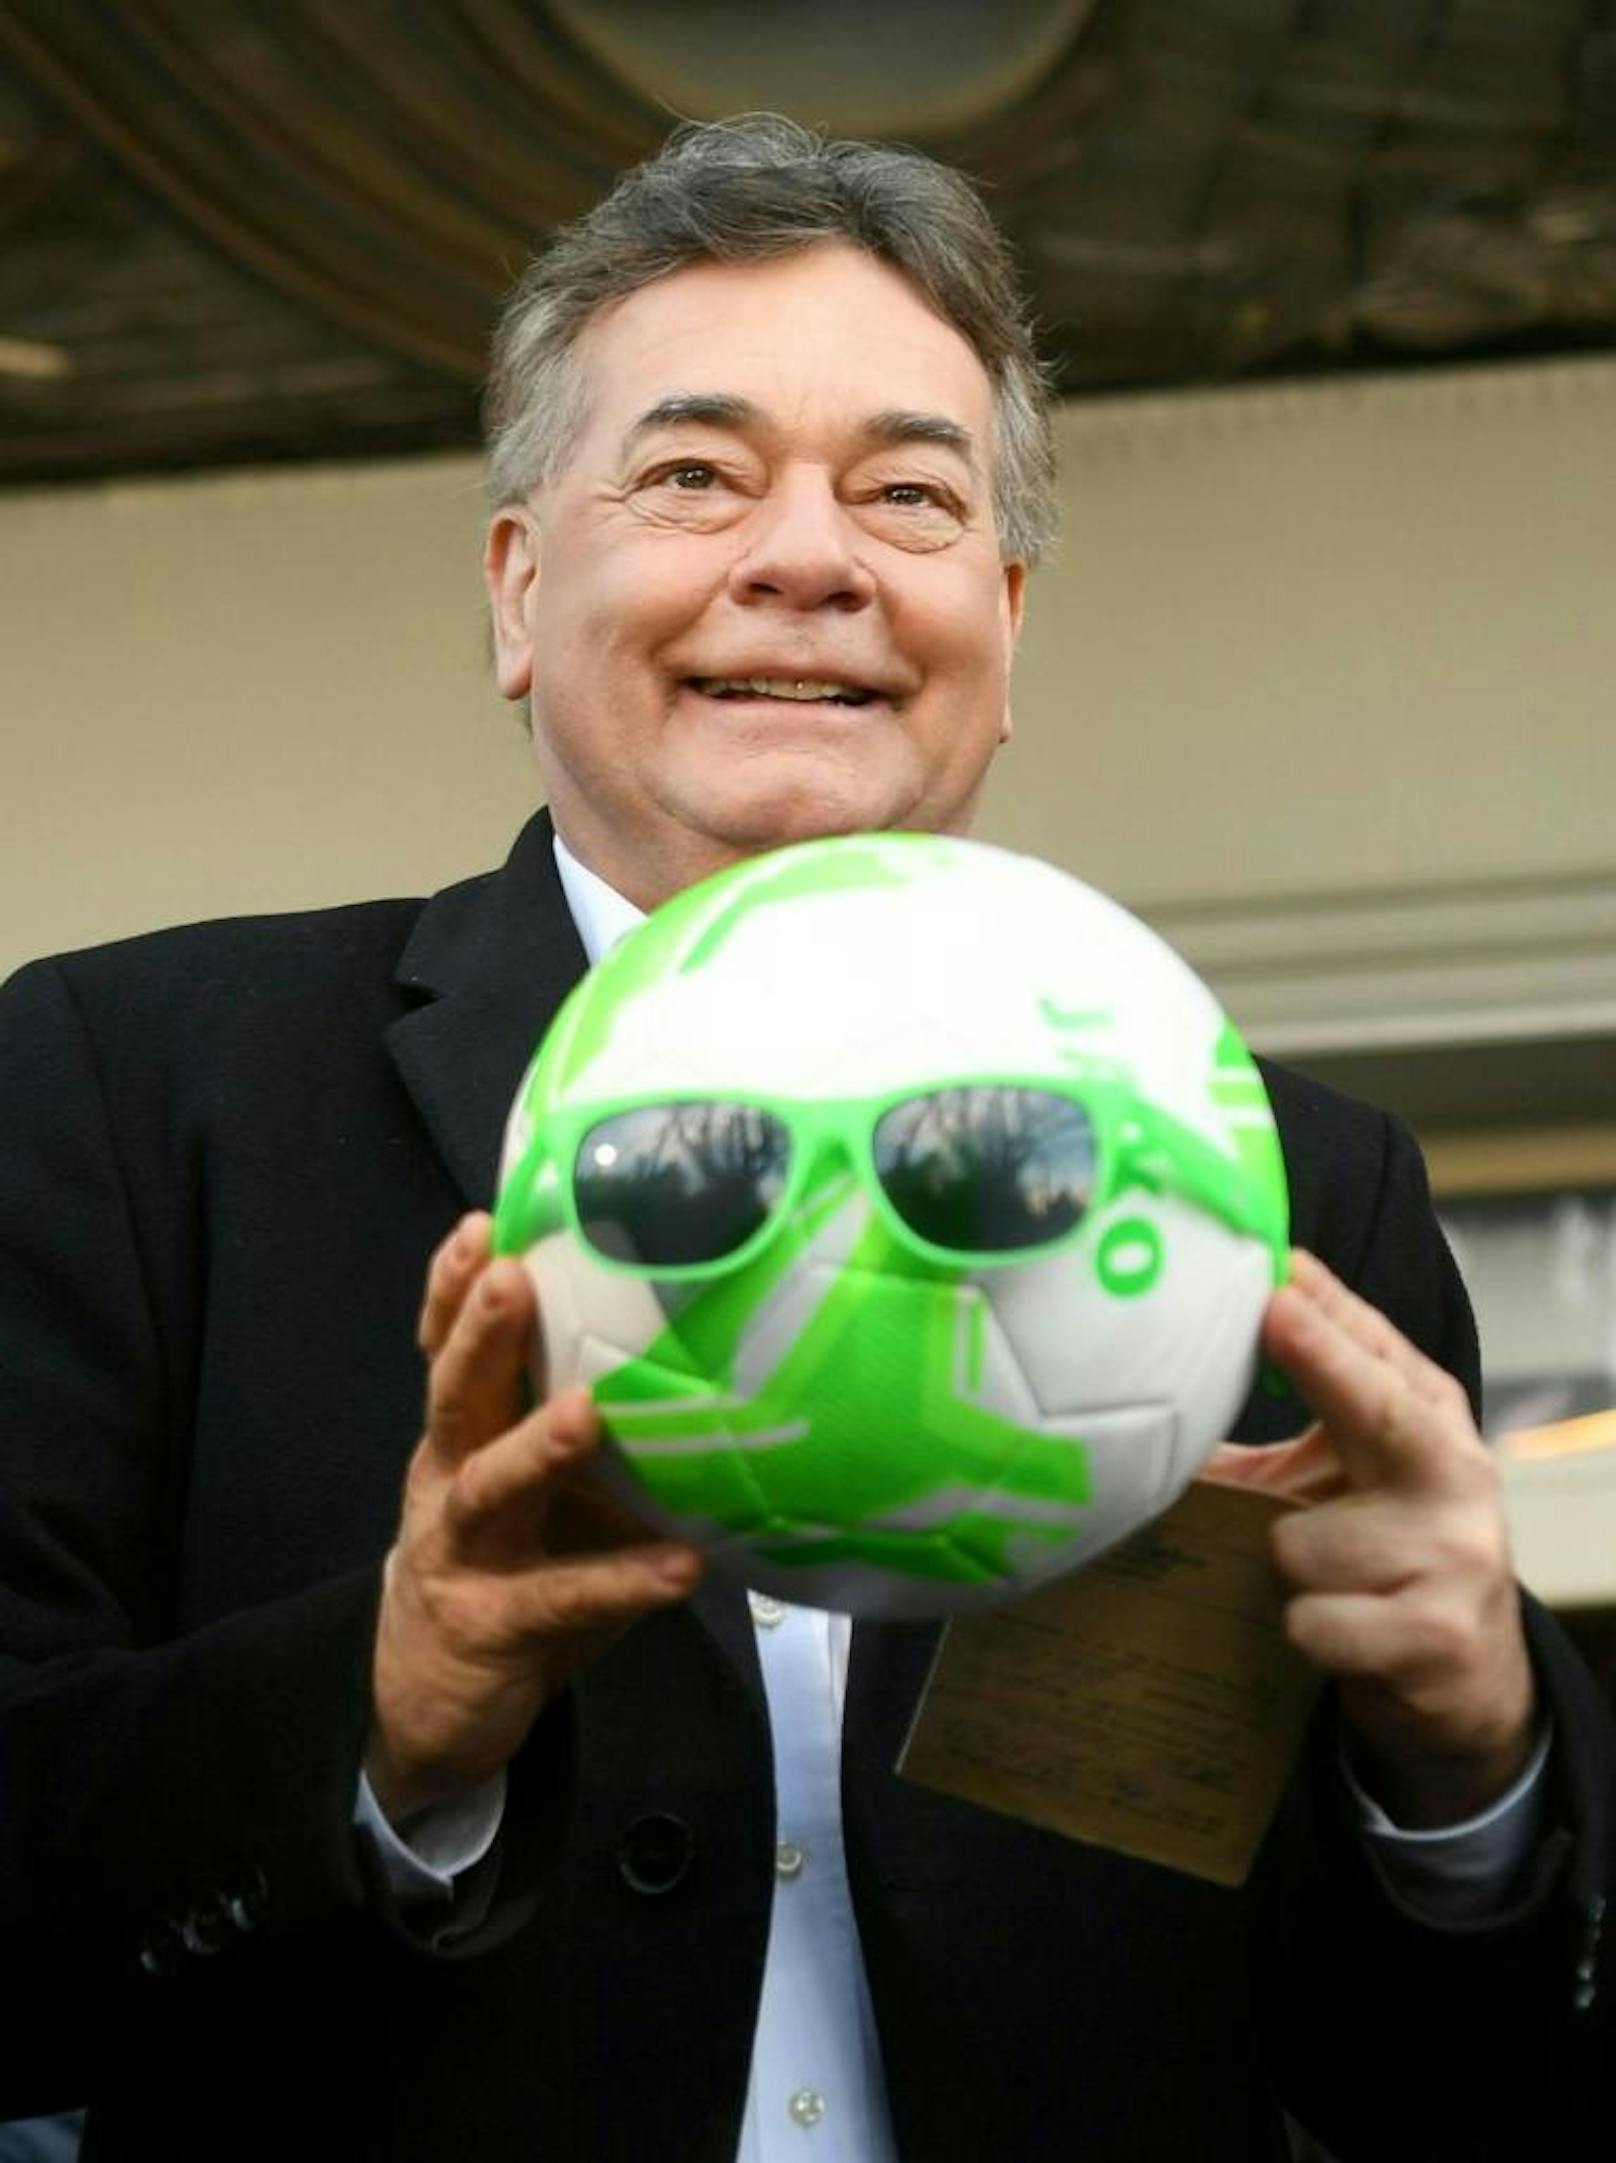 Vizekanzler Werner Kogler mit einem Ball am Dienstag, 7. Jänner 2020, anlässlich der Amtsübergabe im Ministerium für öffentliche Agenden und Sport Wien.